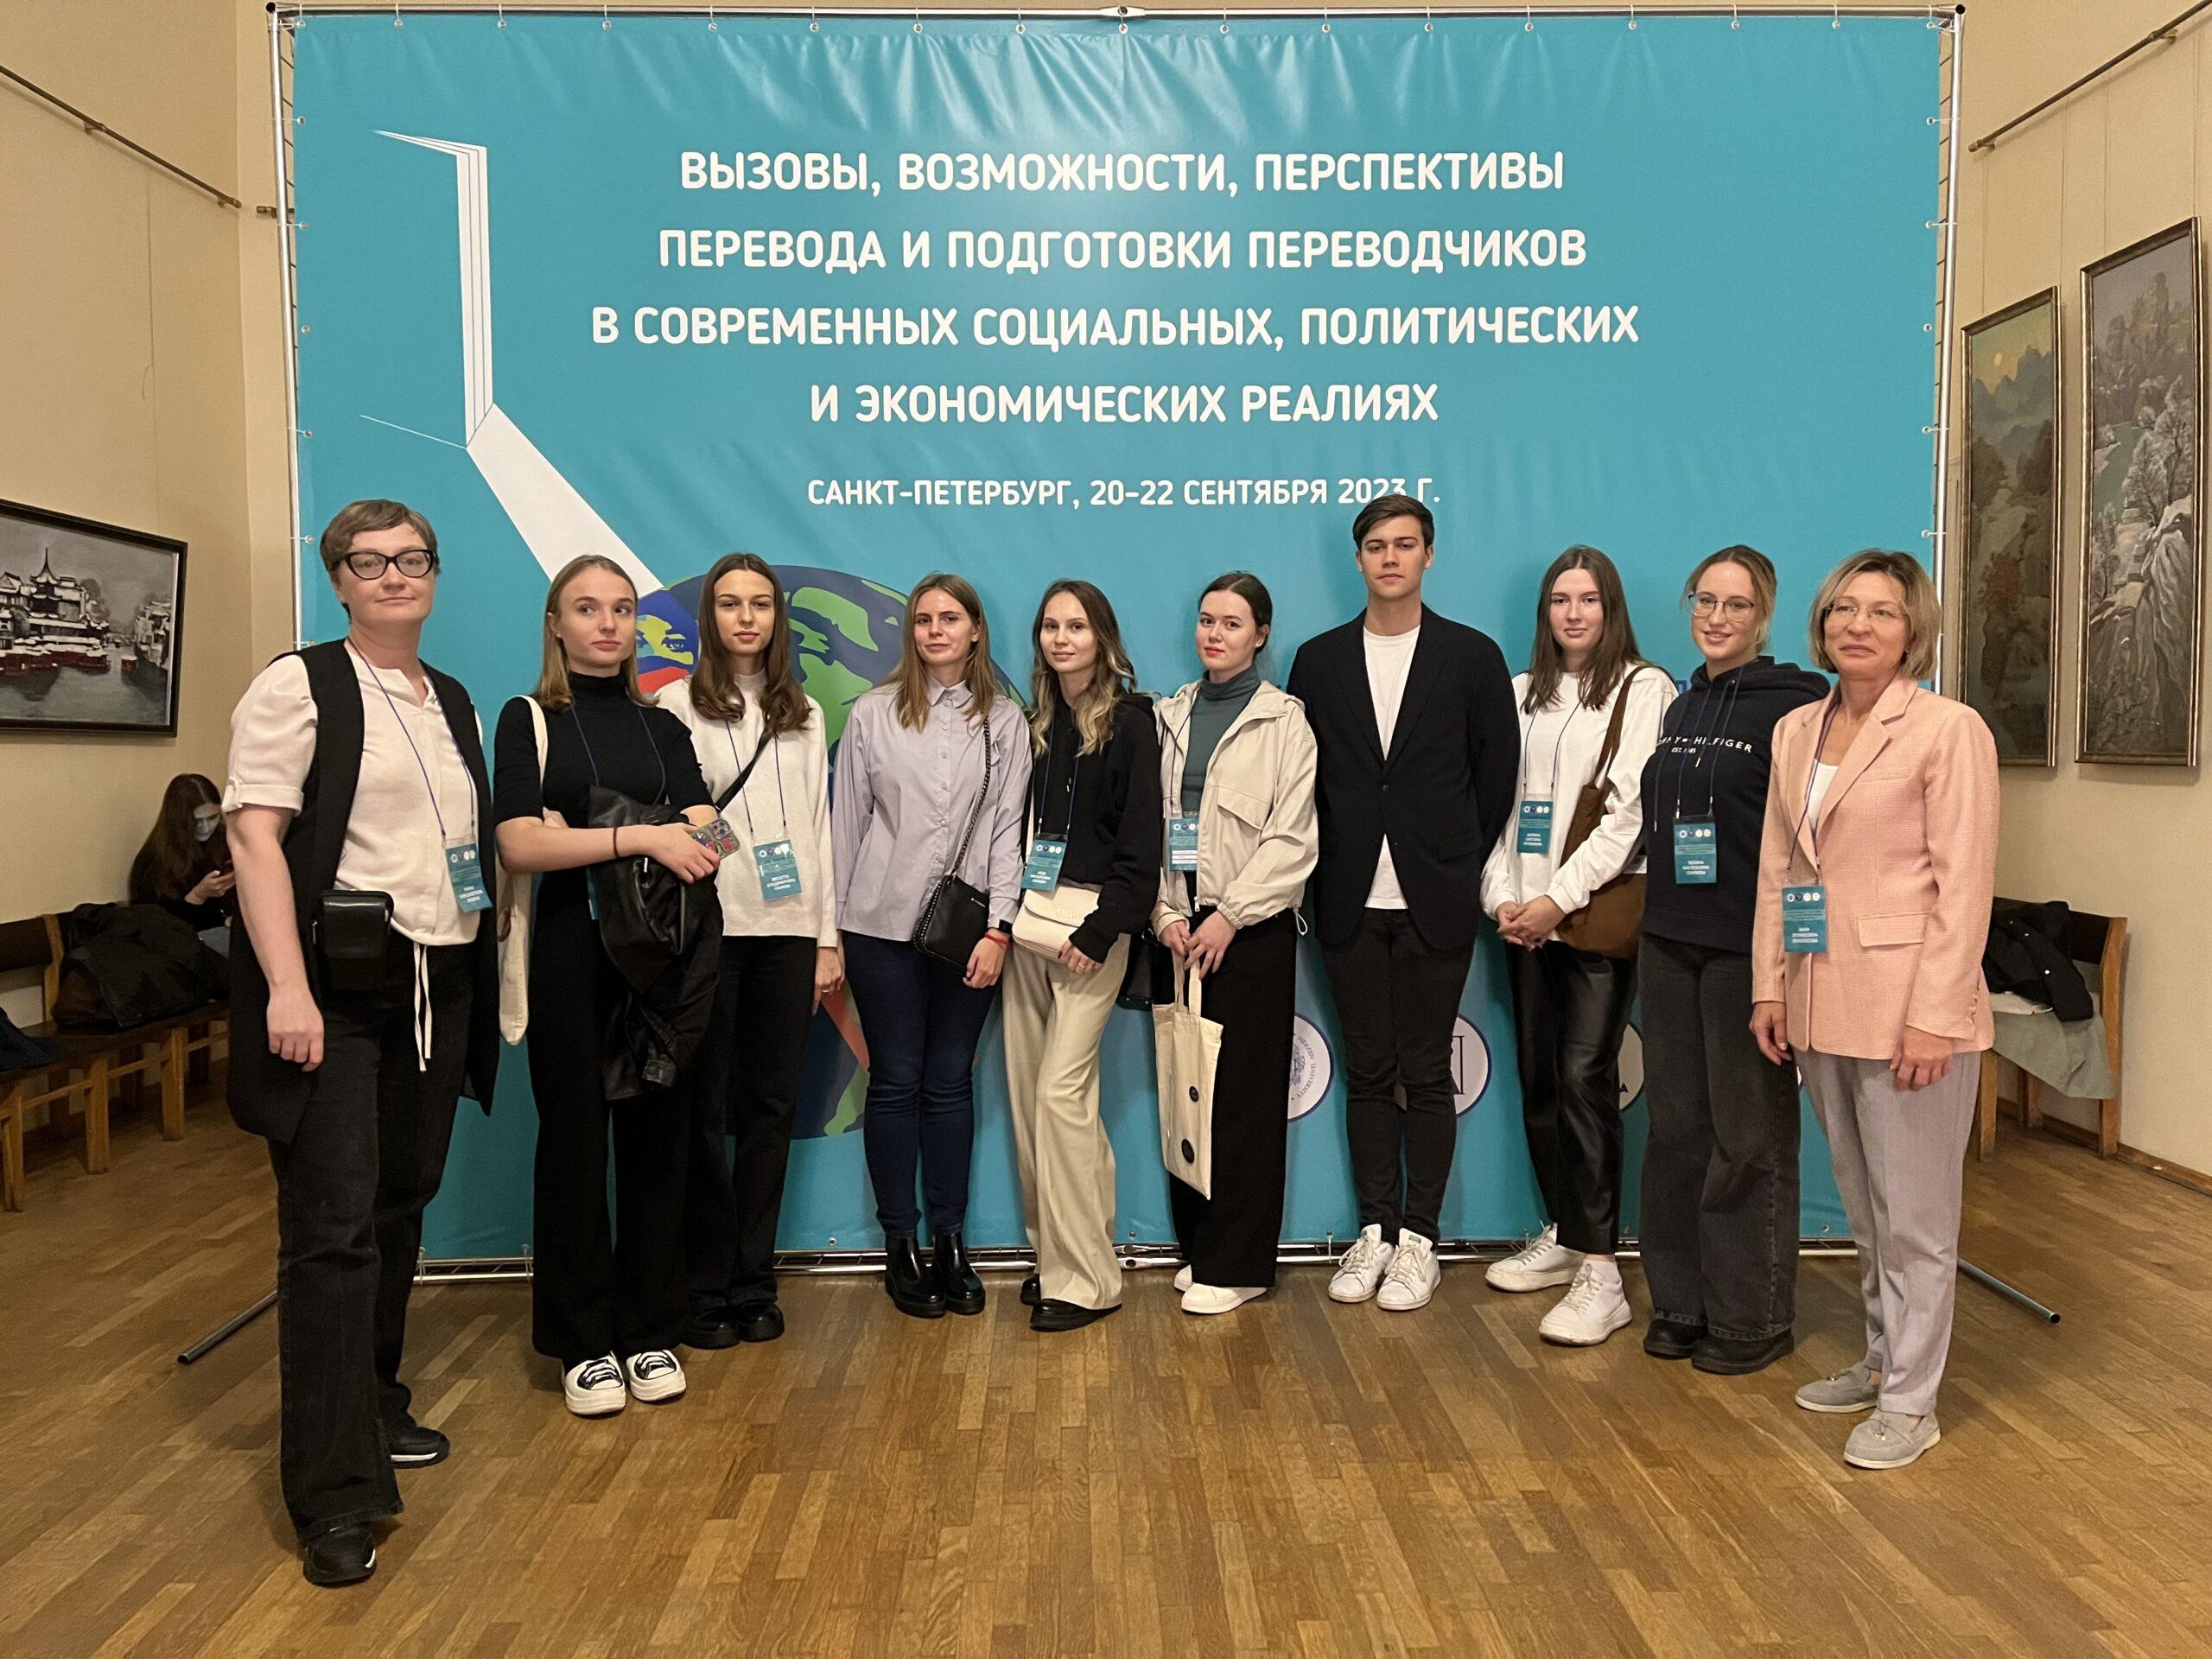 Студенты и преподаватели СПбГЭУ на Всероссийской конференции по переводу